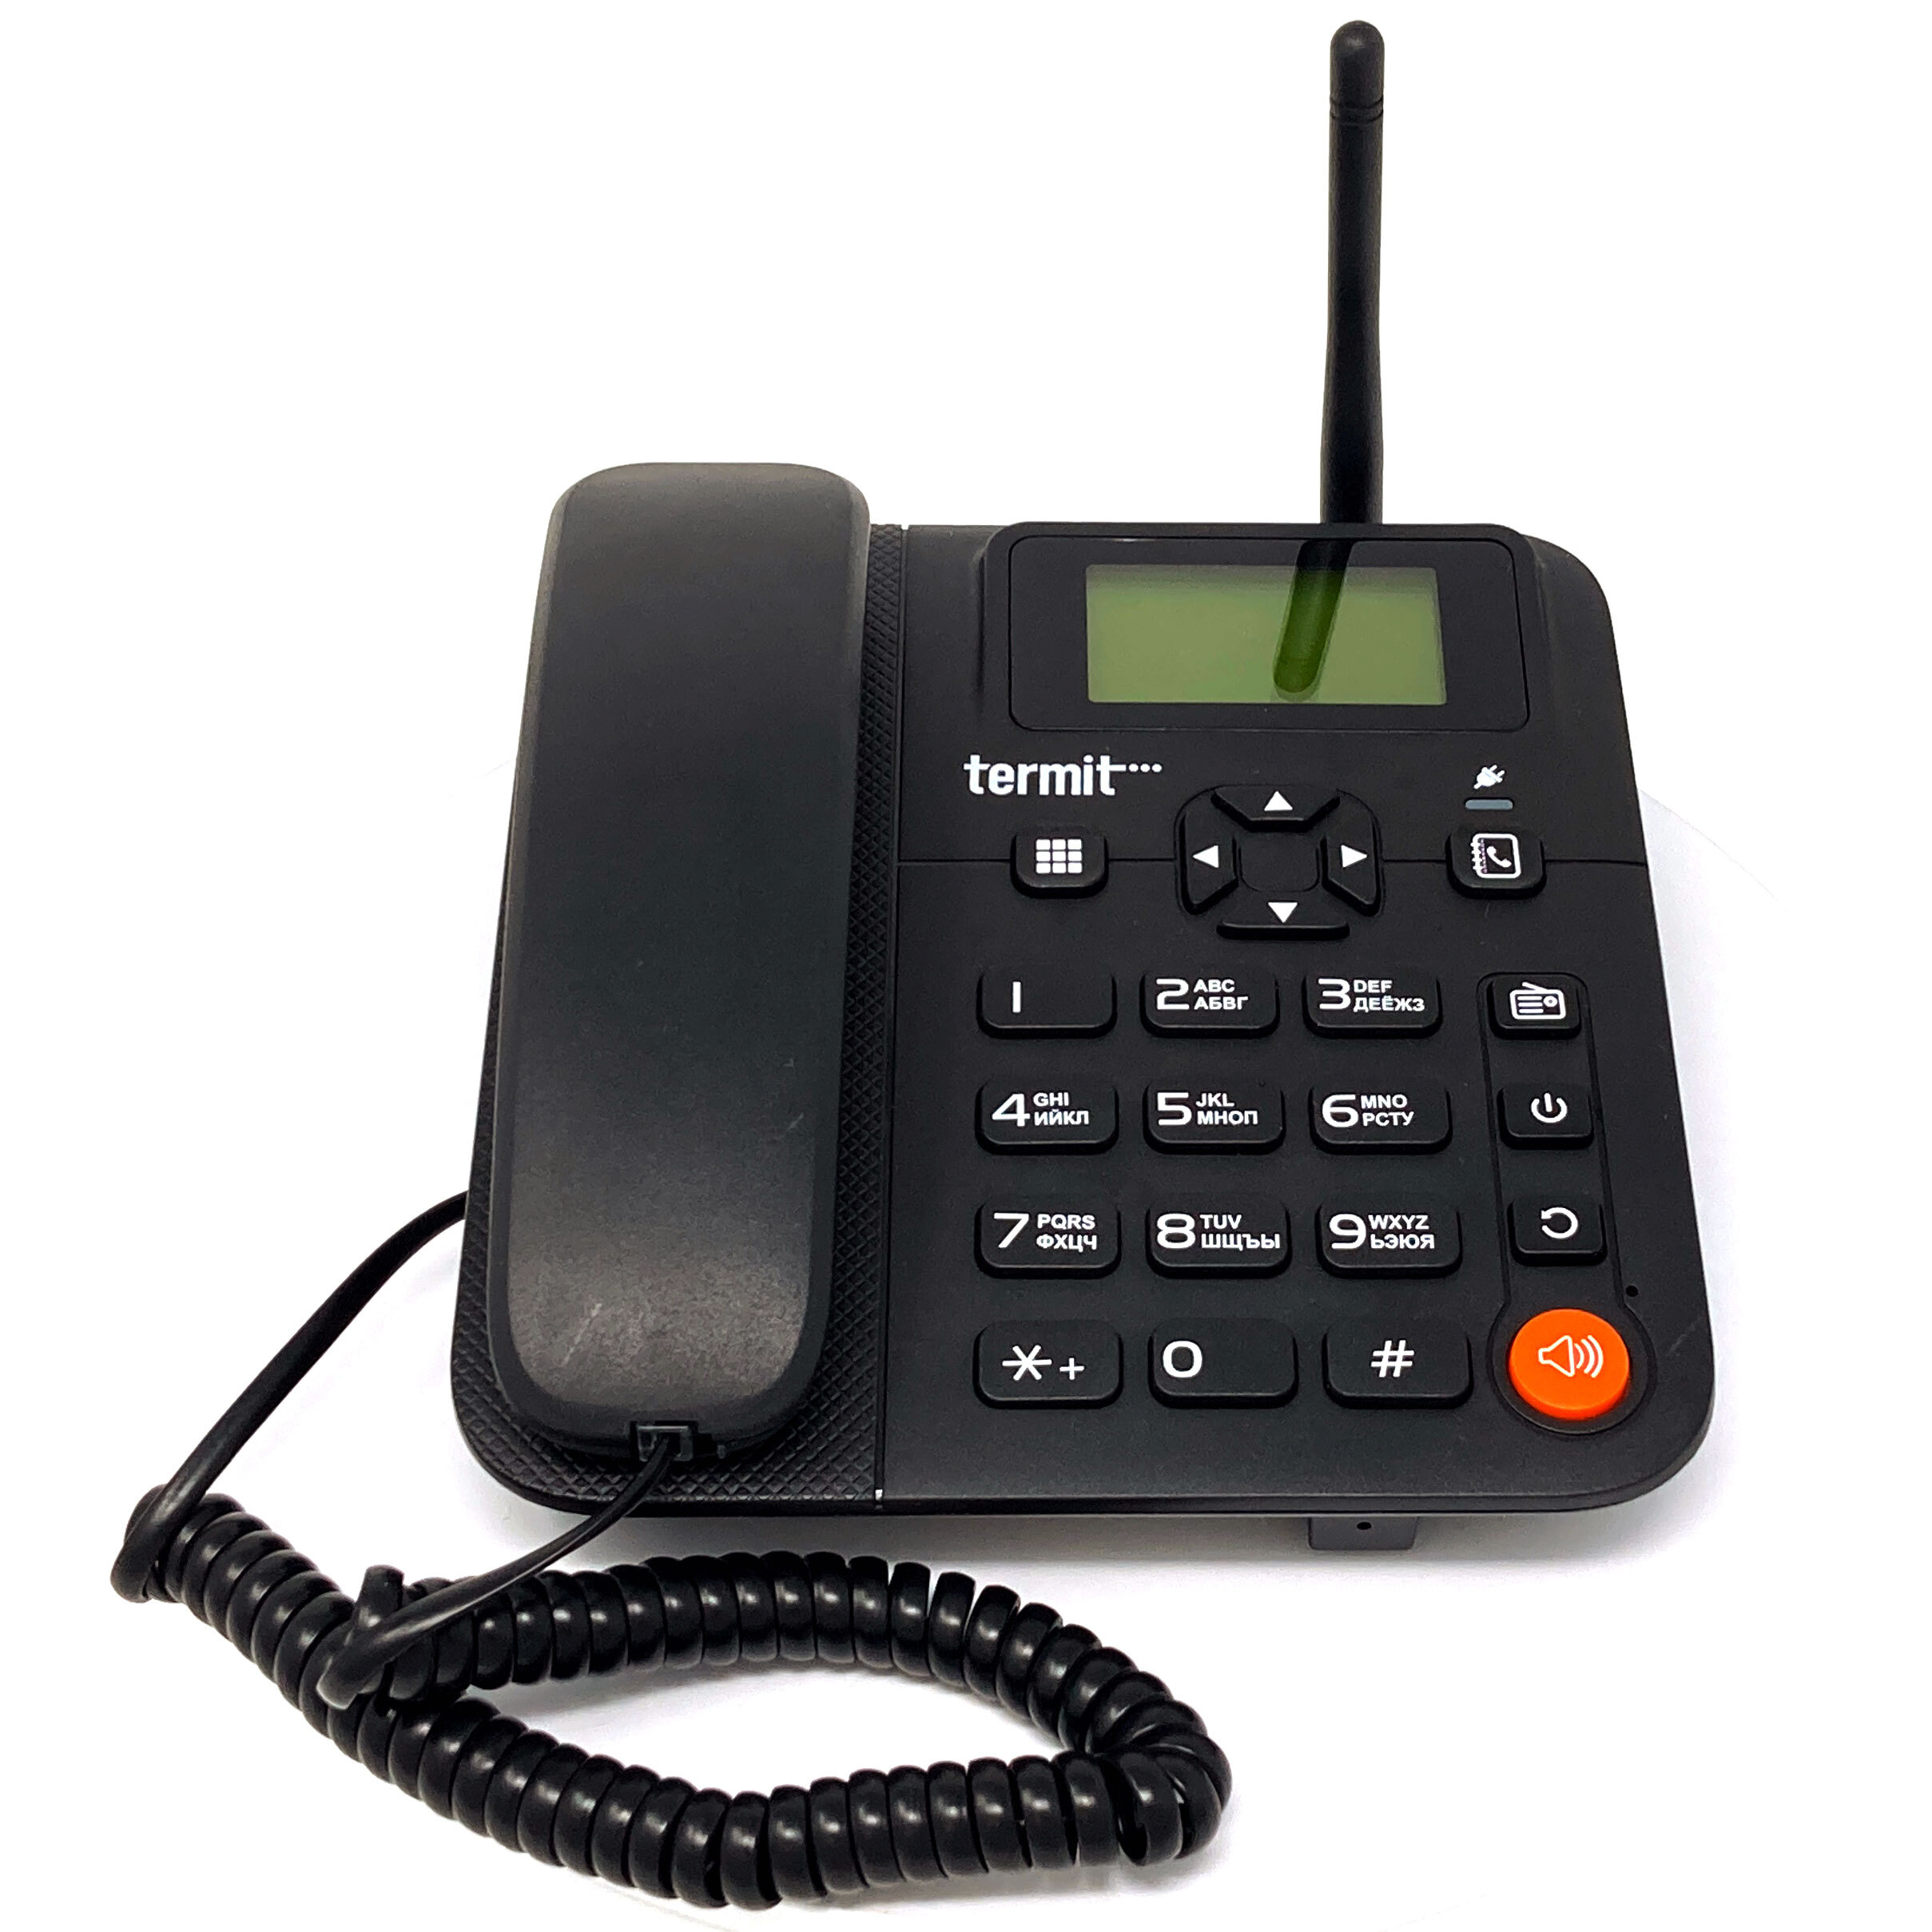 Мобильный стационарный интернет. Termit FIXPHONE v2. Стационарный сотовый телефон Termit FIXPHONE v2. Termit FIXPHONE v2 Rev.3.1.0. Стационарный GSM-телефон Termit FIXPHONE v2 Rev.3.1.0.